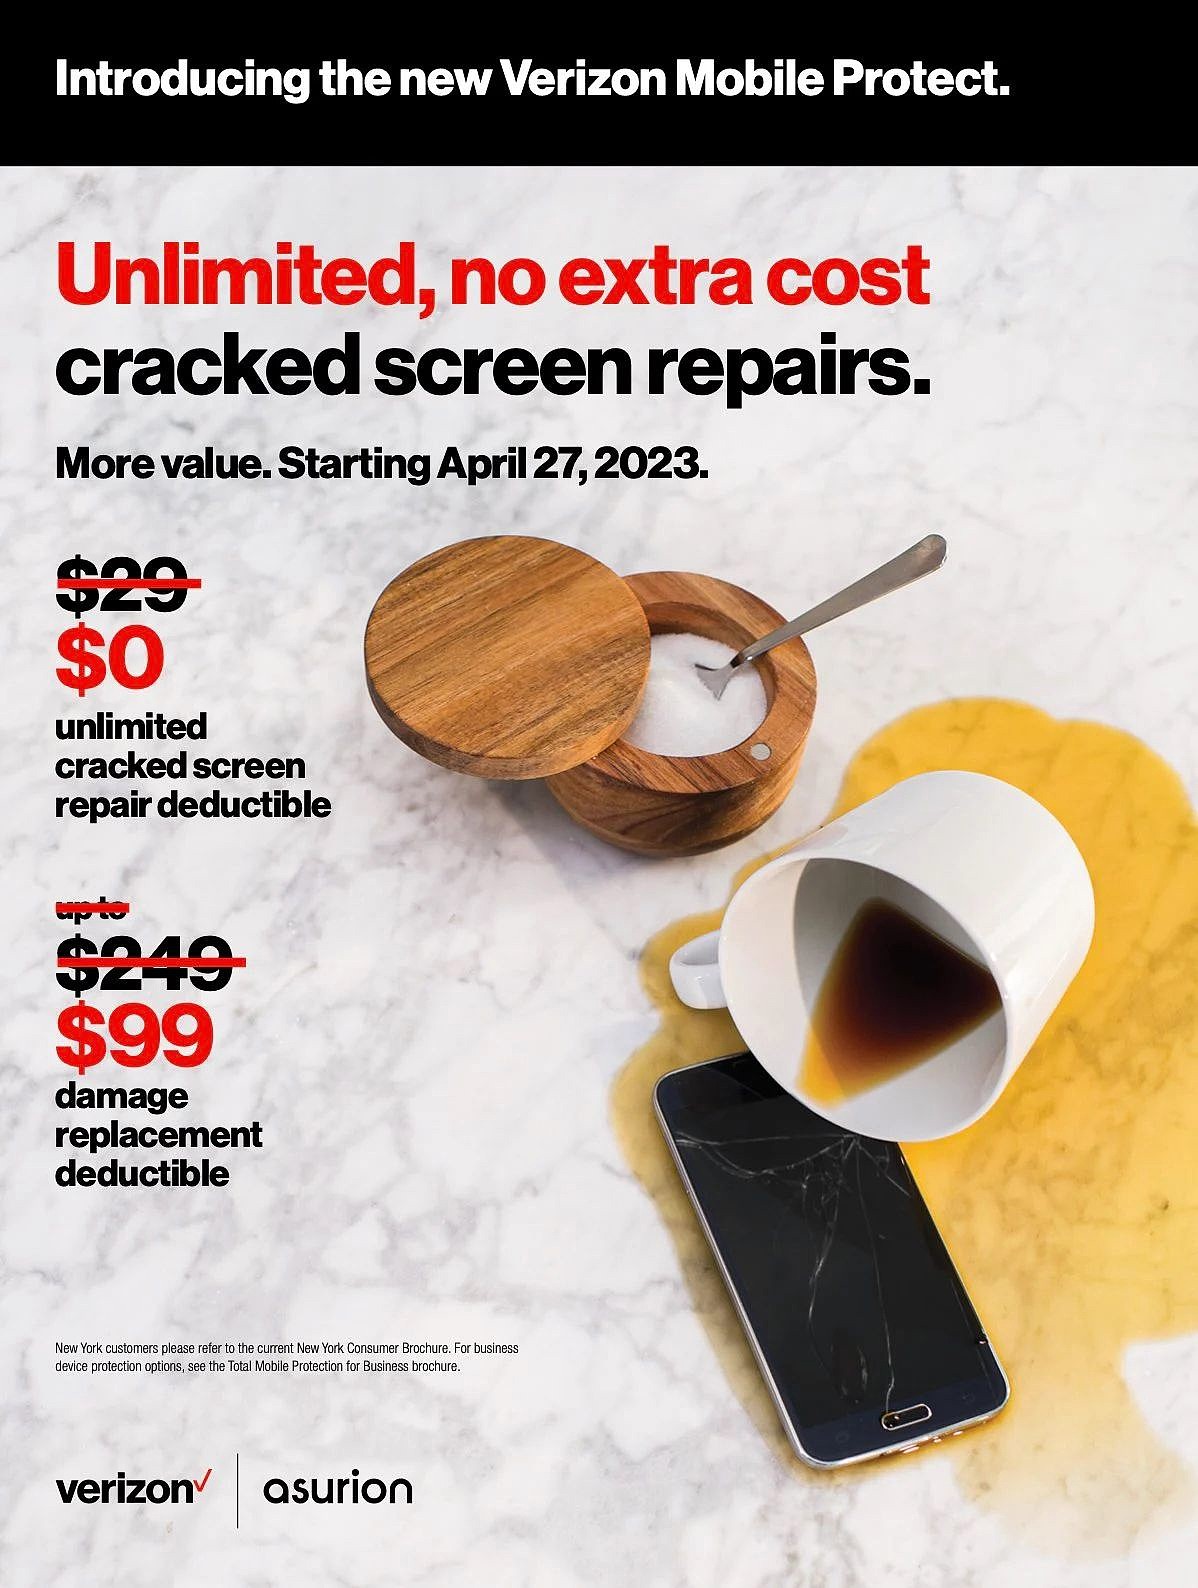 美国运营商 Verizon 升级 Mobile Protect 服务：月费 17 美元，碎屏可免费、无限次维修 - 1